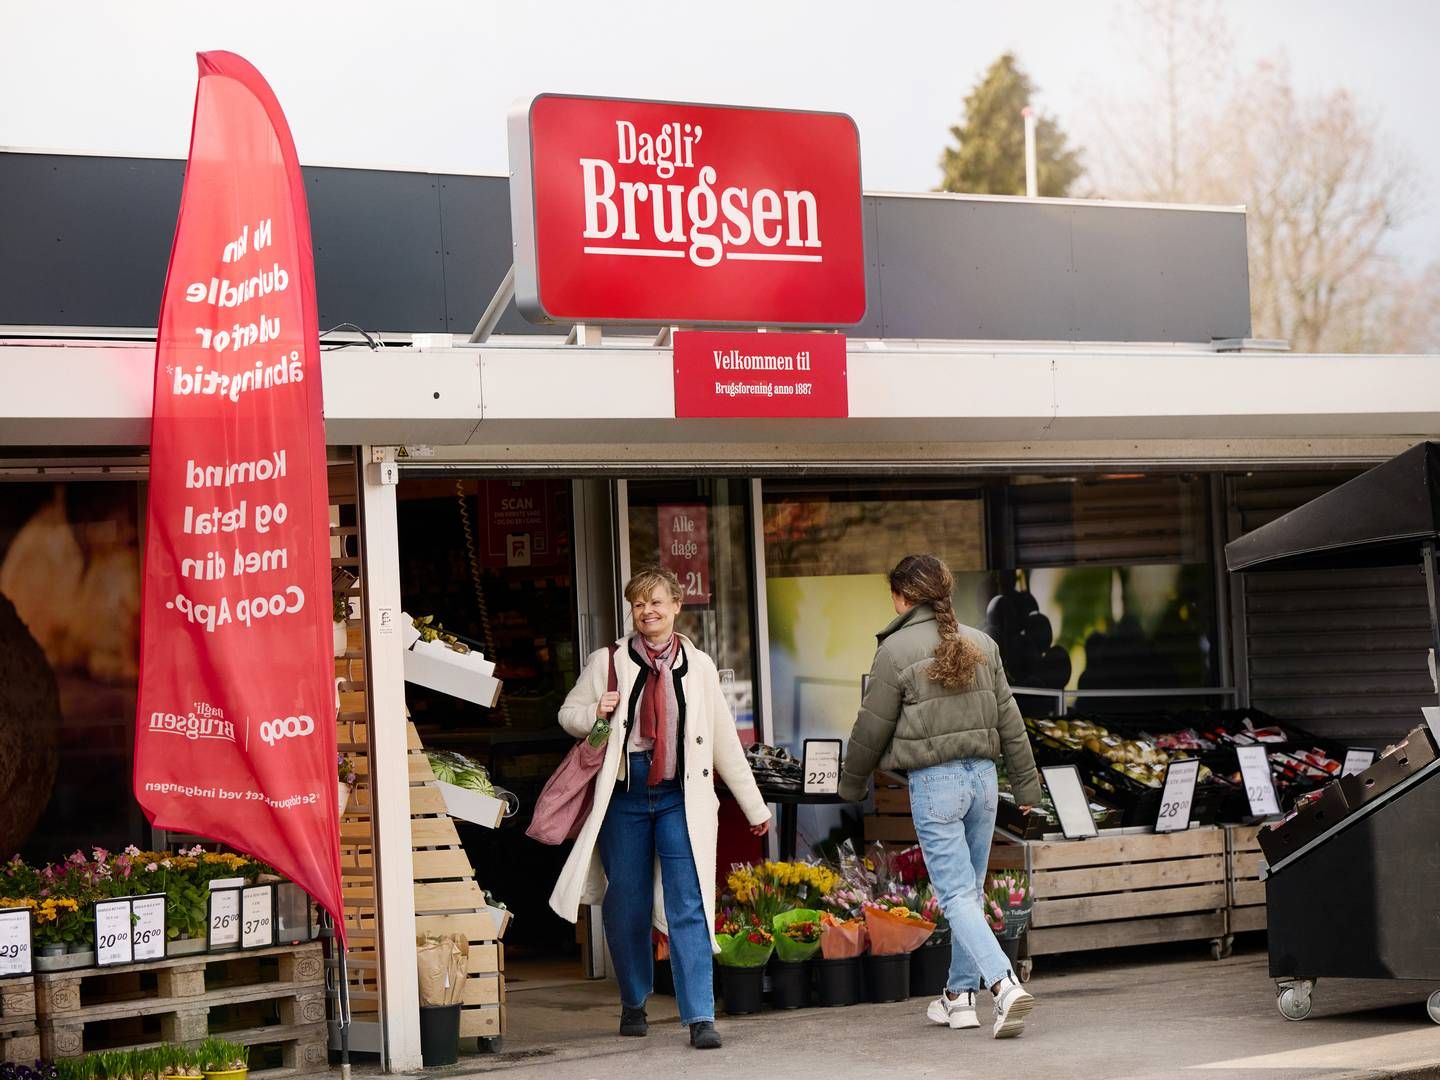 Coop har fået færre butikker i kæden Dagli'brugsen. | Foto: Niclas Jessen/coop/pr